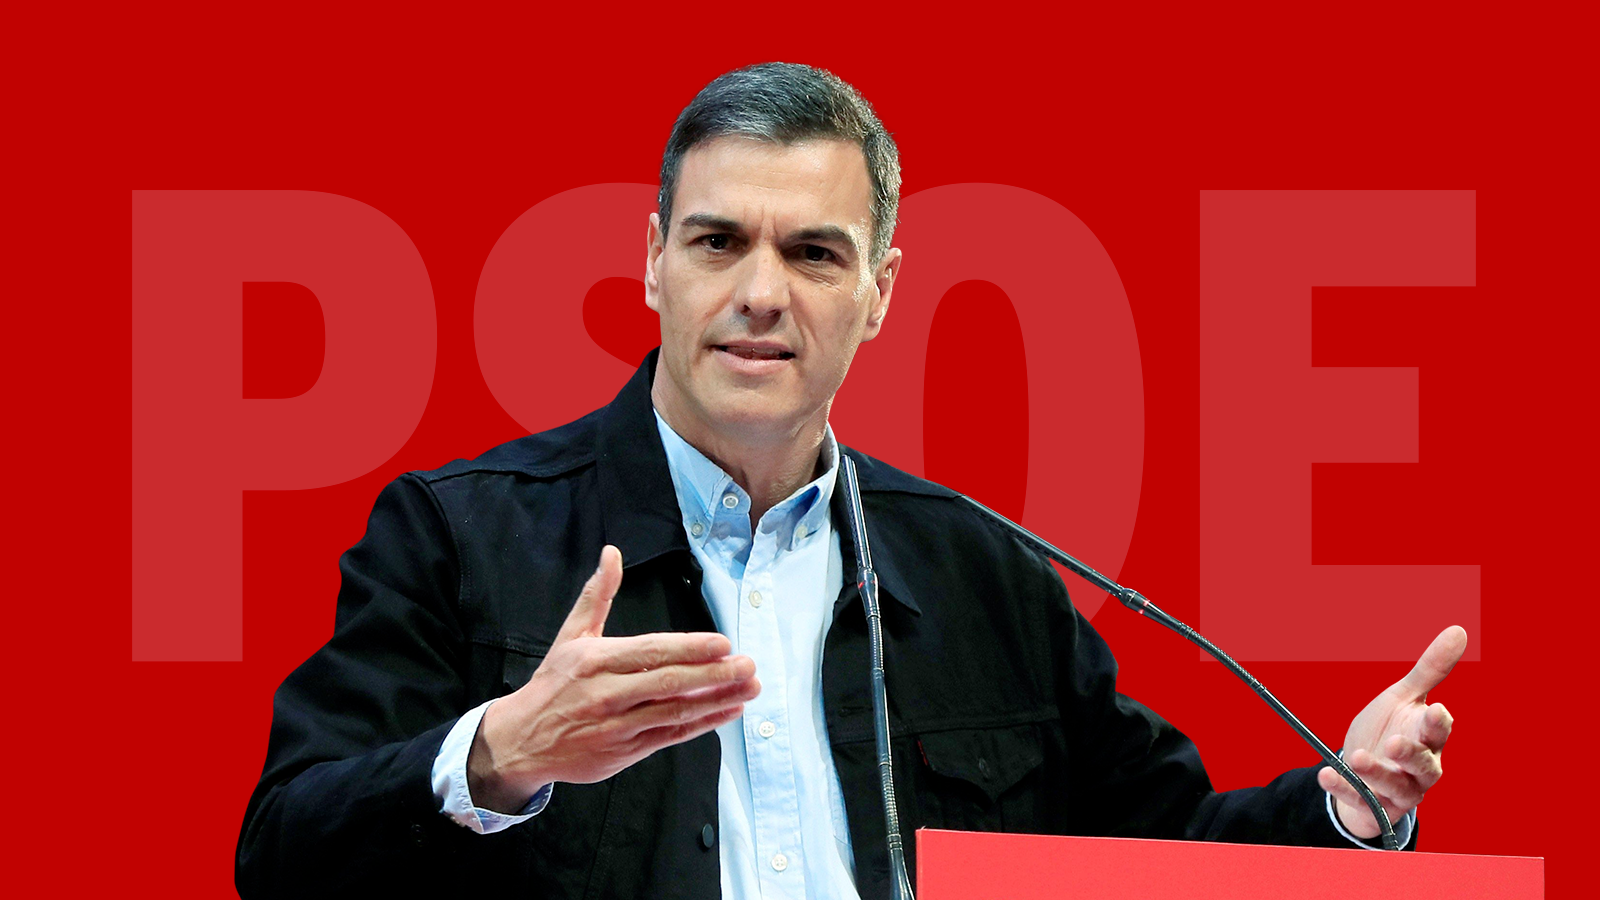 Elecciones generales 2019 - Candidato: Pedro Sánchez (PSOE)